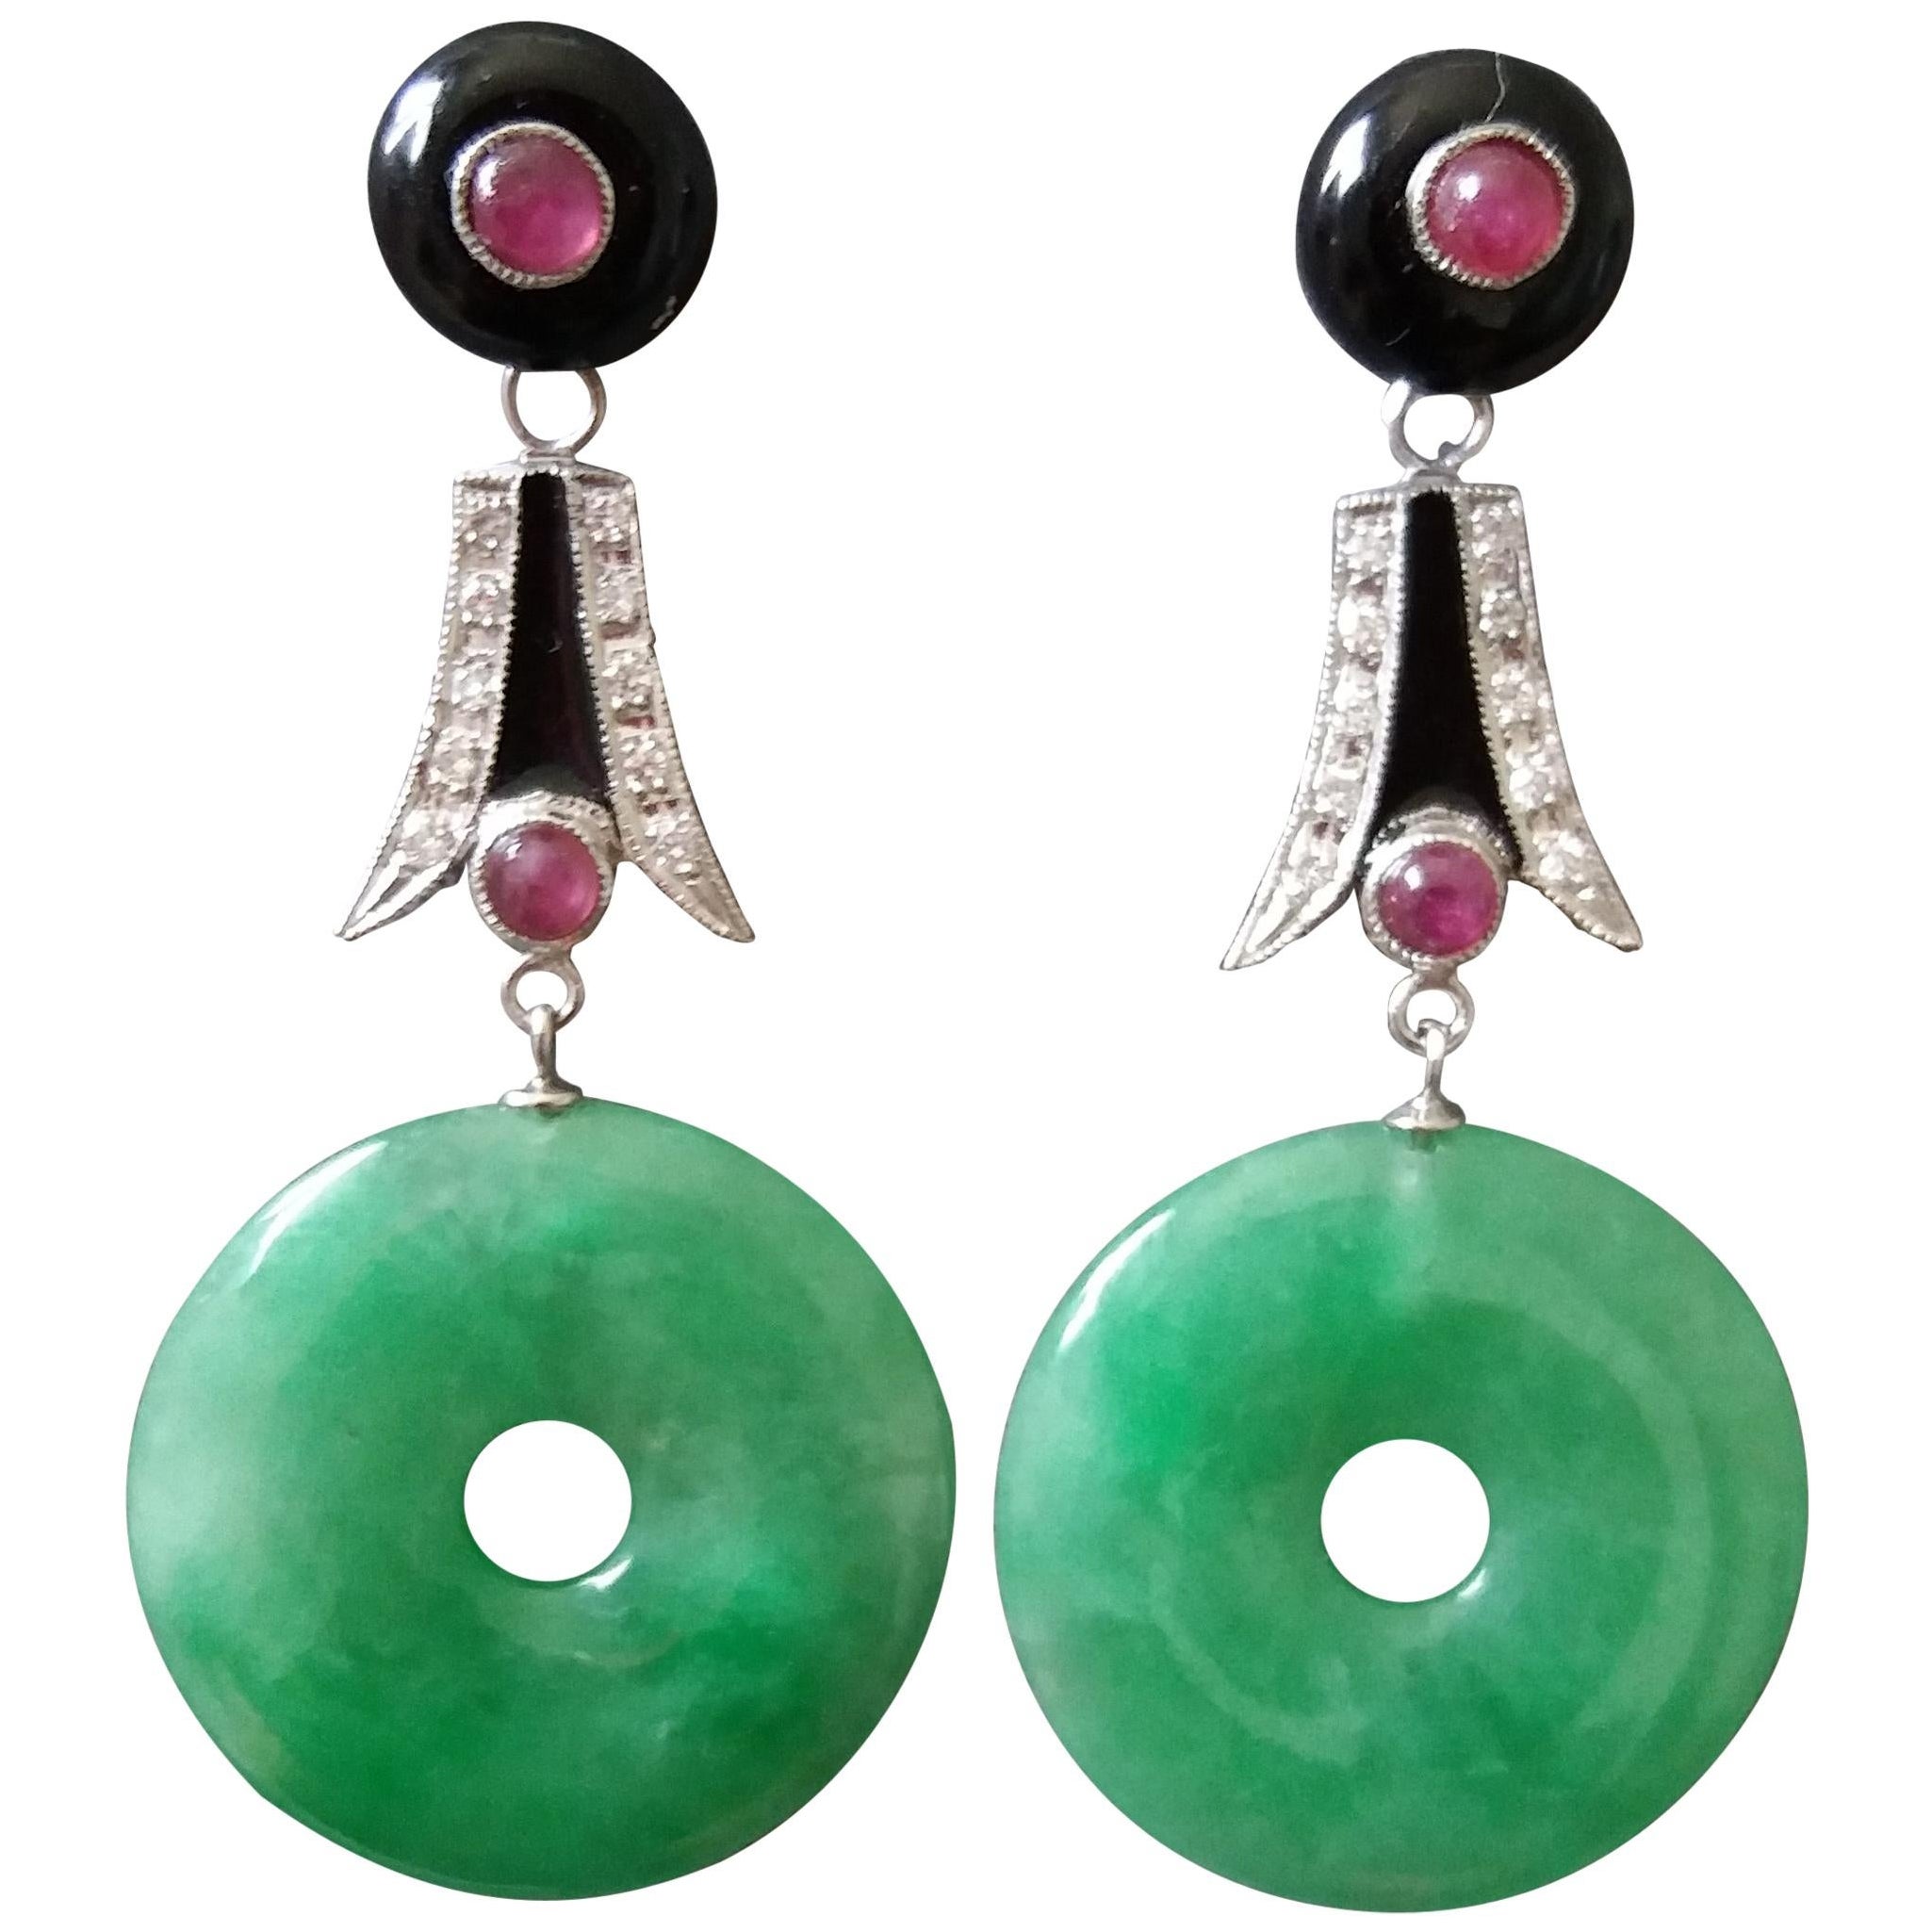 Art Deco Style Jade Donuts Gold Diamonds Ruby Black Onix Black Enamel Earrings